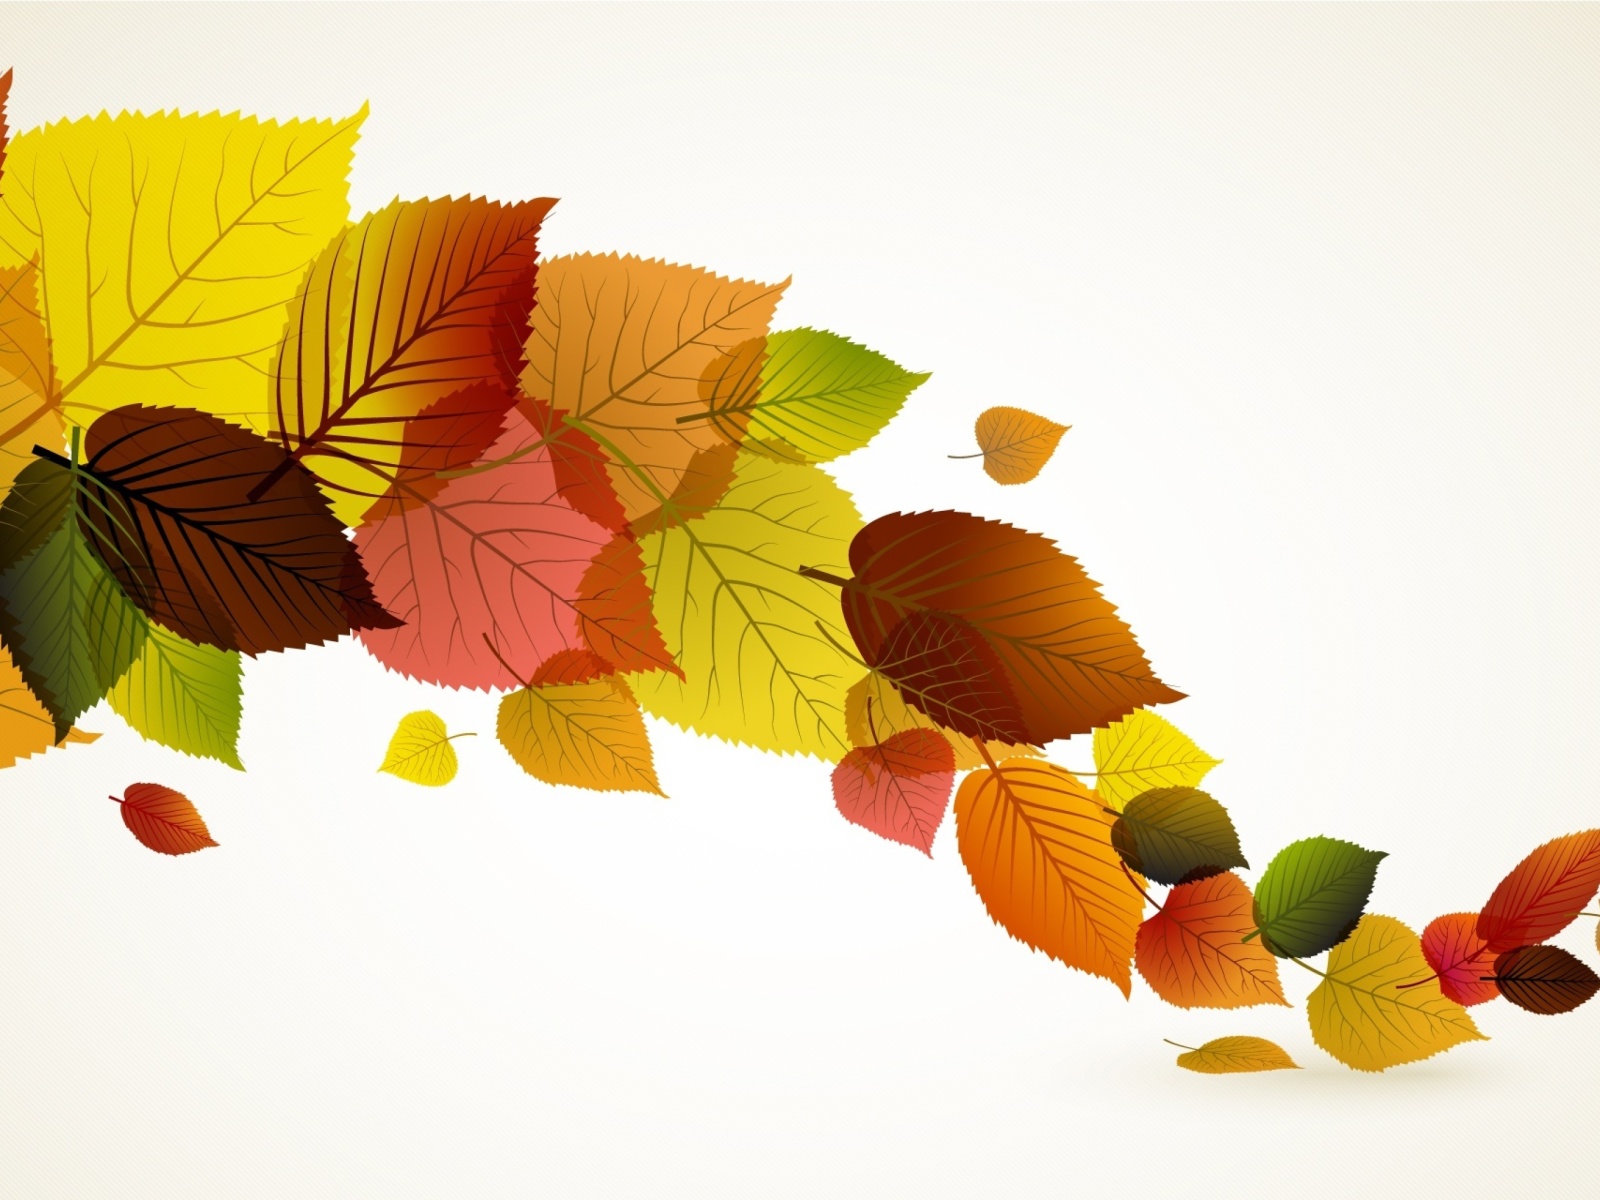 Das Drawn autumn leaves Wallpaper 1600x1200